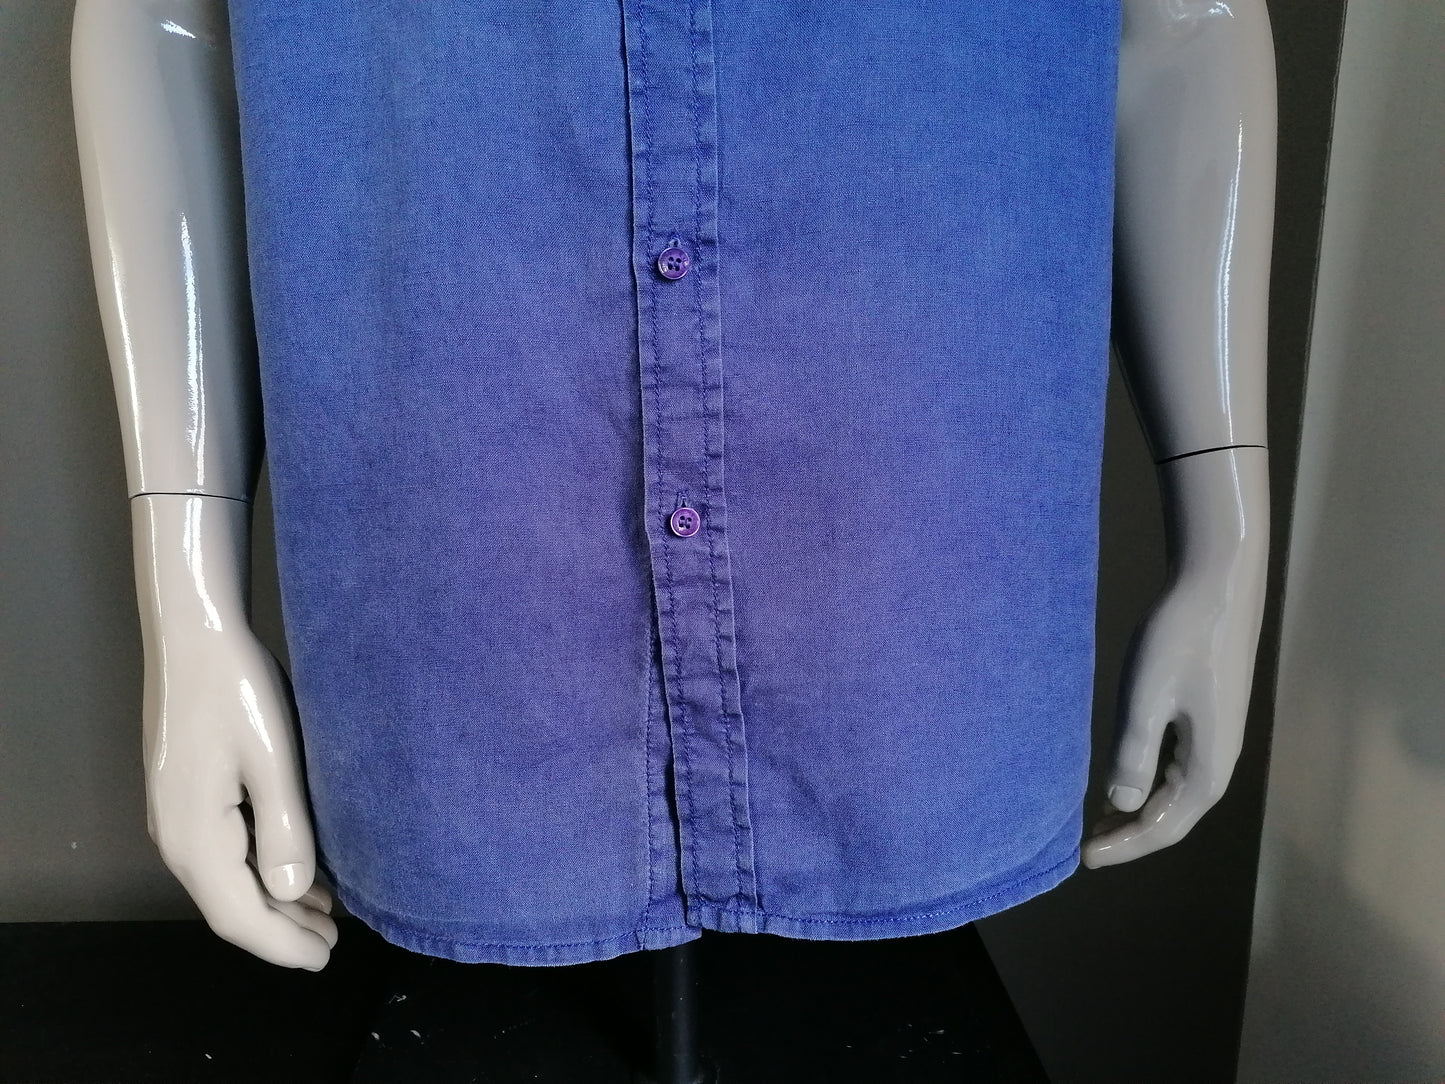 Camisa de lino de relackz mangas cortas. Azul oscuro. Tamaño XXL / 2XL